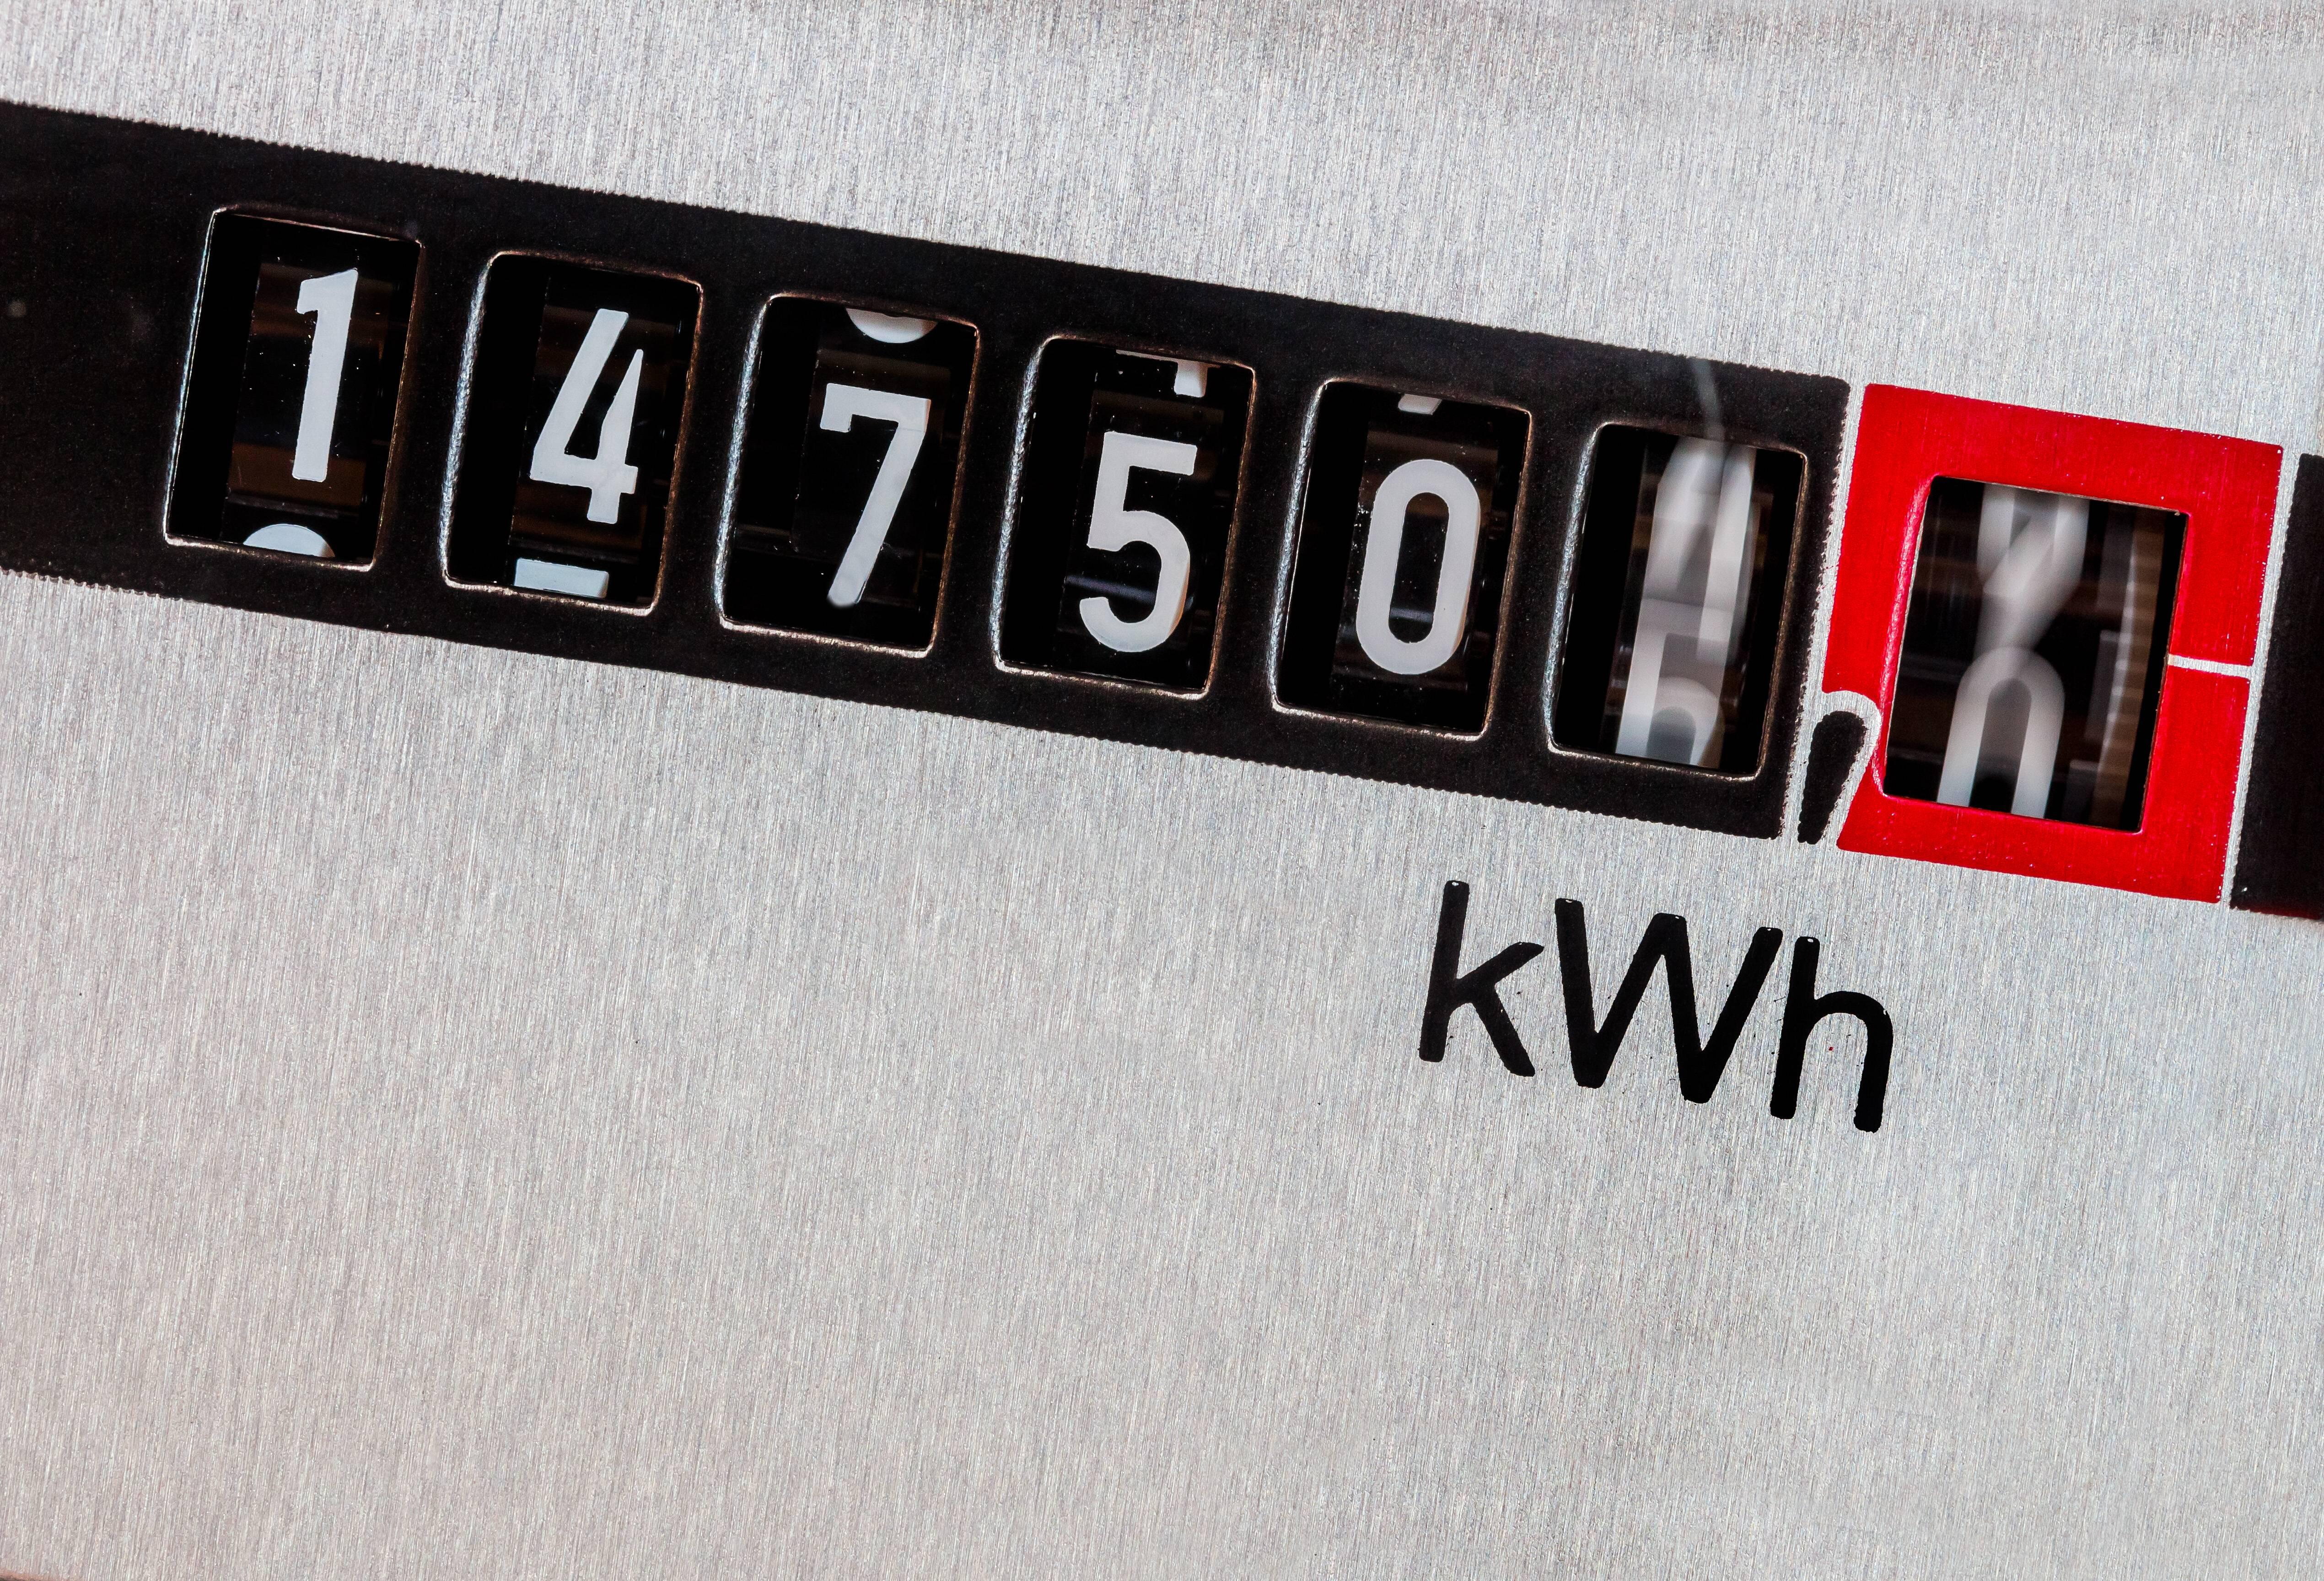 Strompreis berechnen: Diese Faktoren zählen | WEB.DE